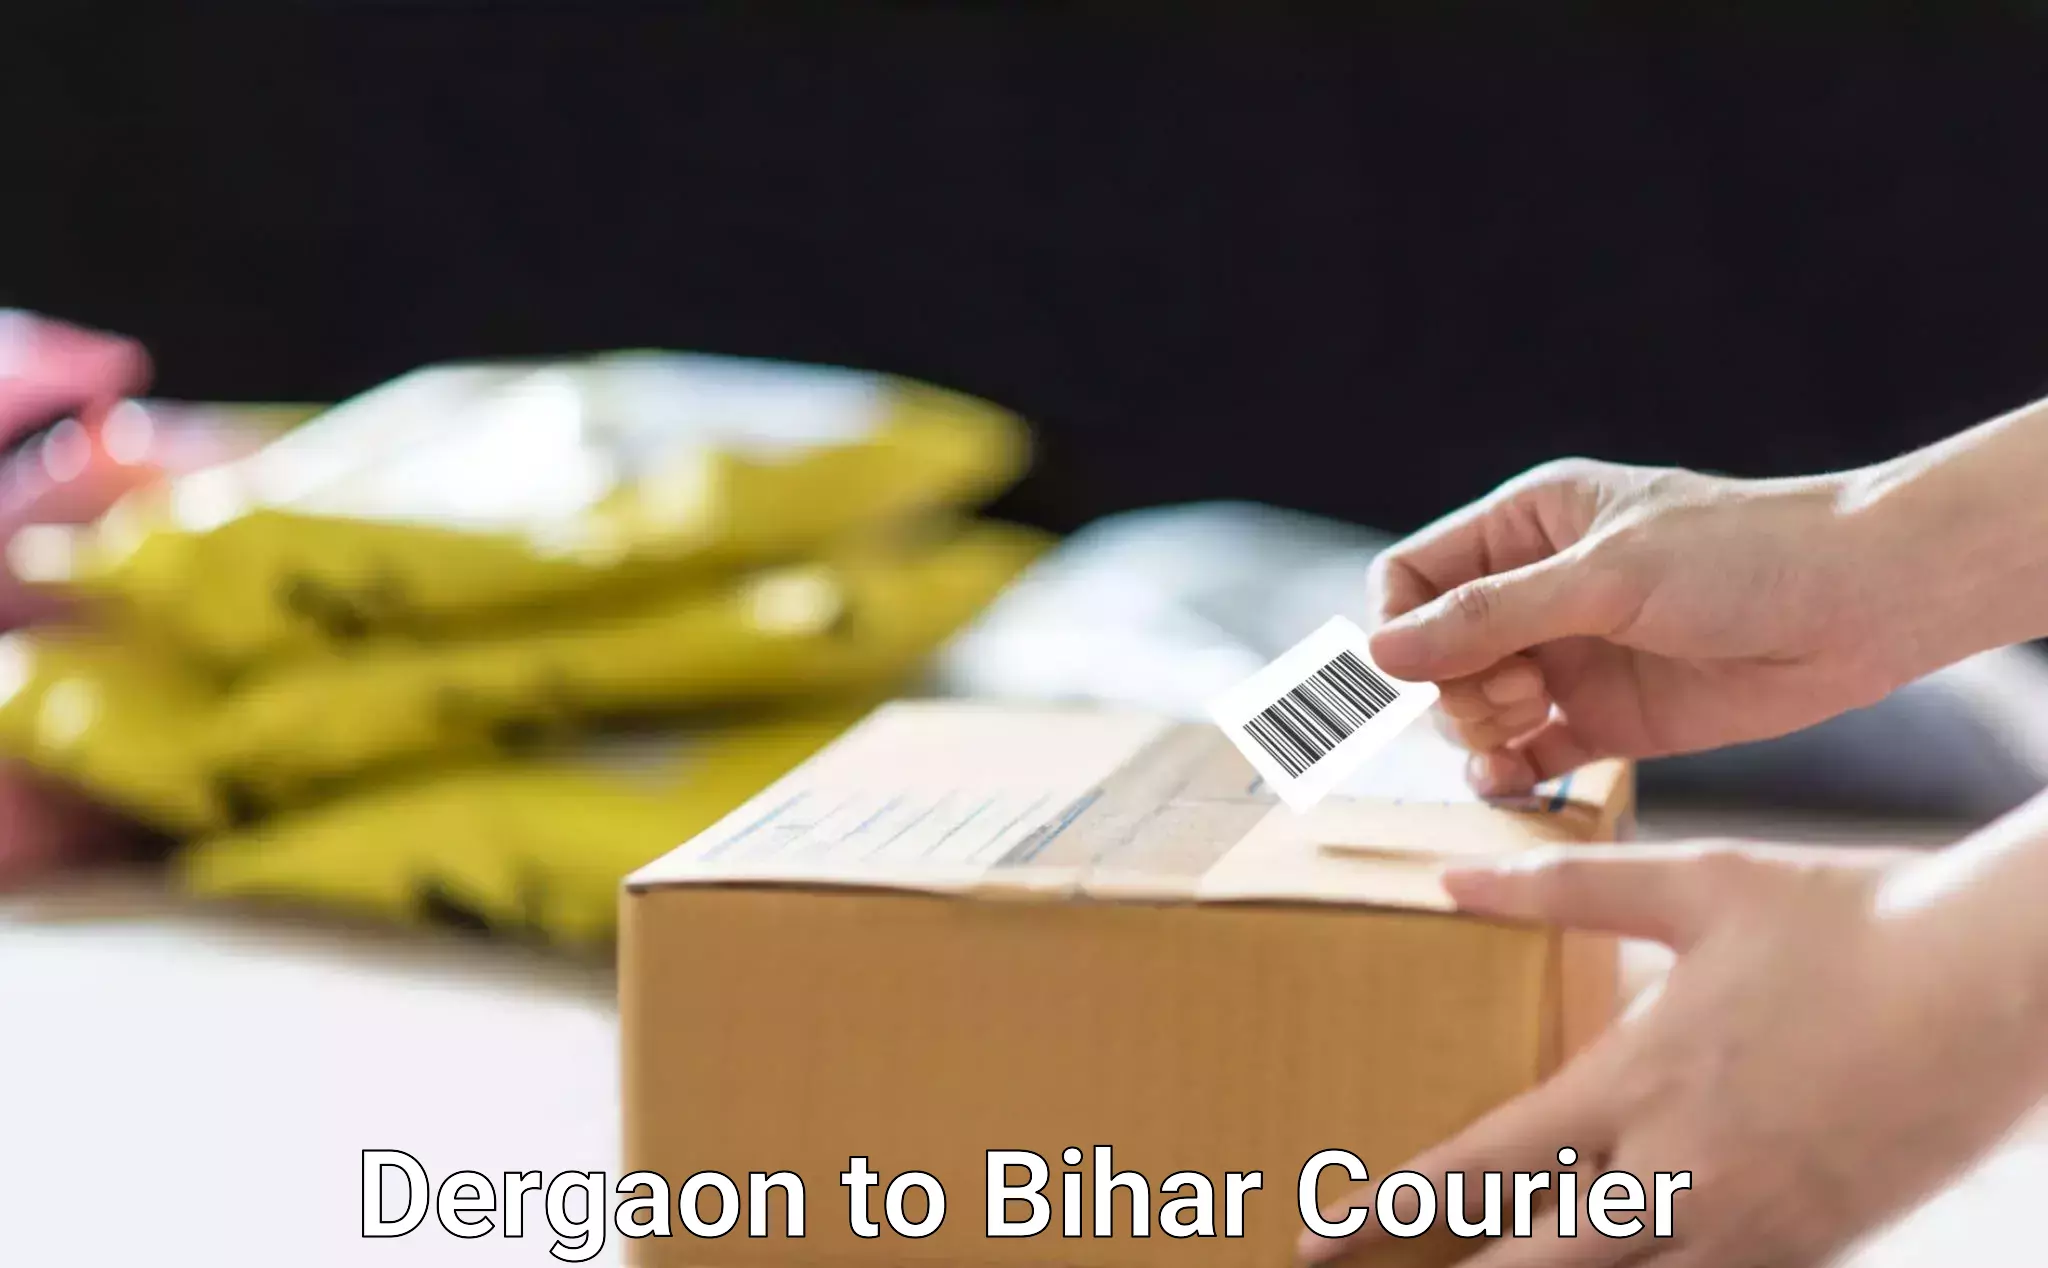 Quick dispatch service Dergaon to Bihta